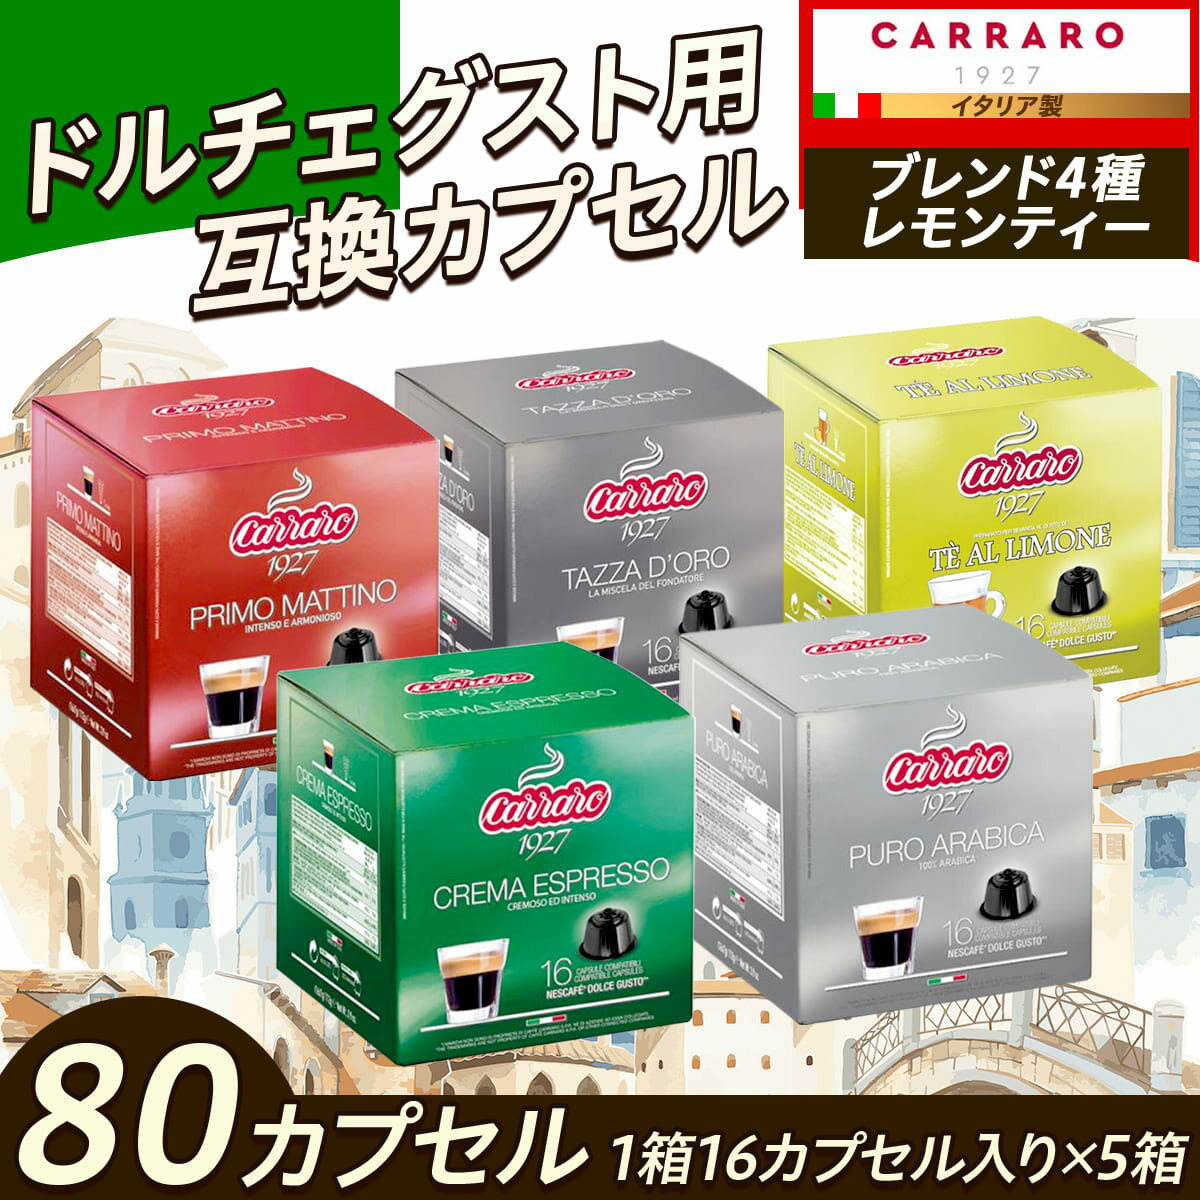 カラーロ 互換 コーヒーカプセル ブレンド4種+レモンティー1種 組合せパック 80カプセル（16カプセル×5箱） set4